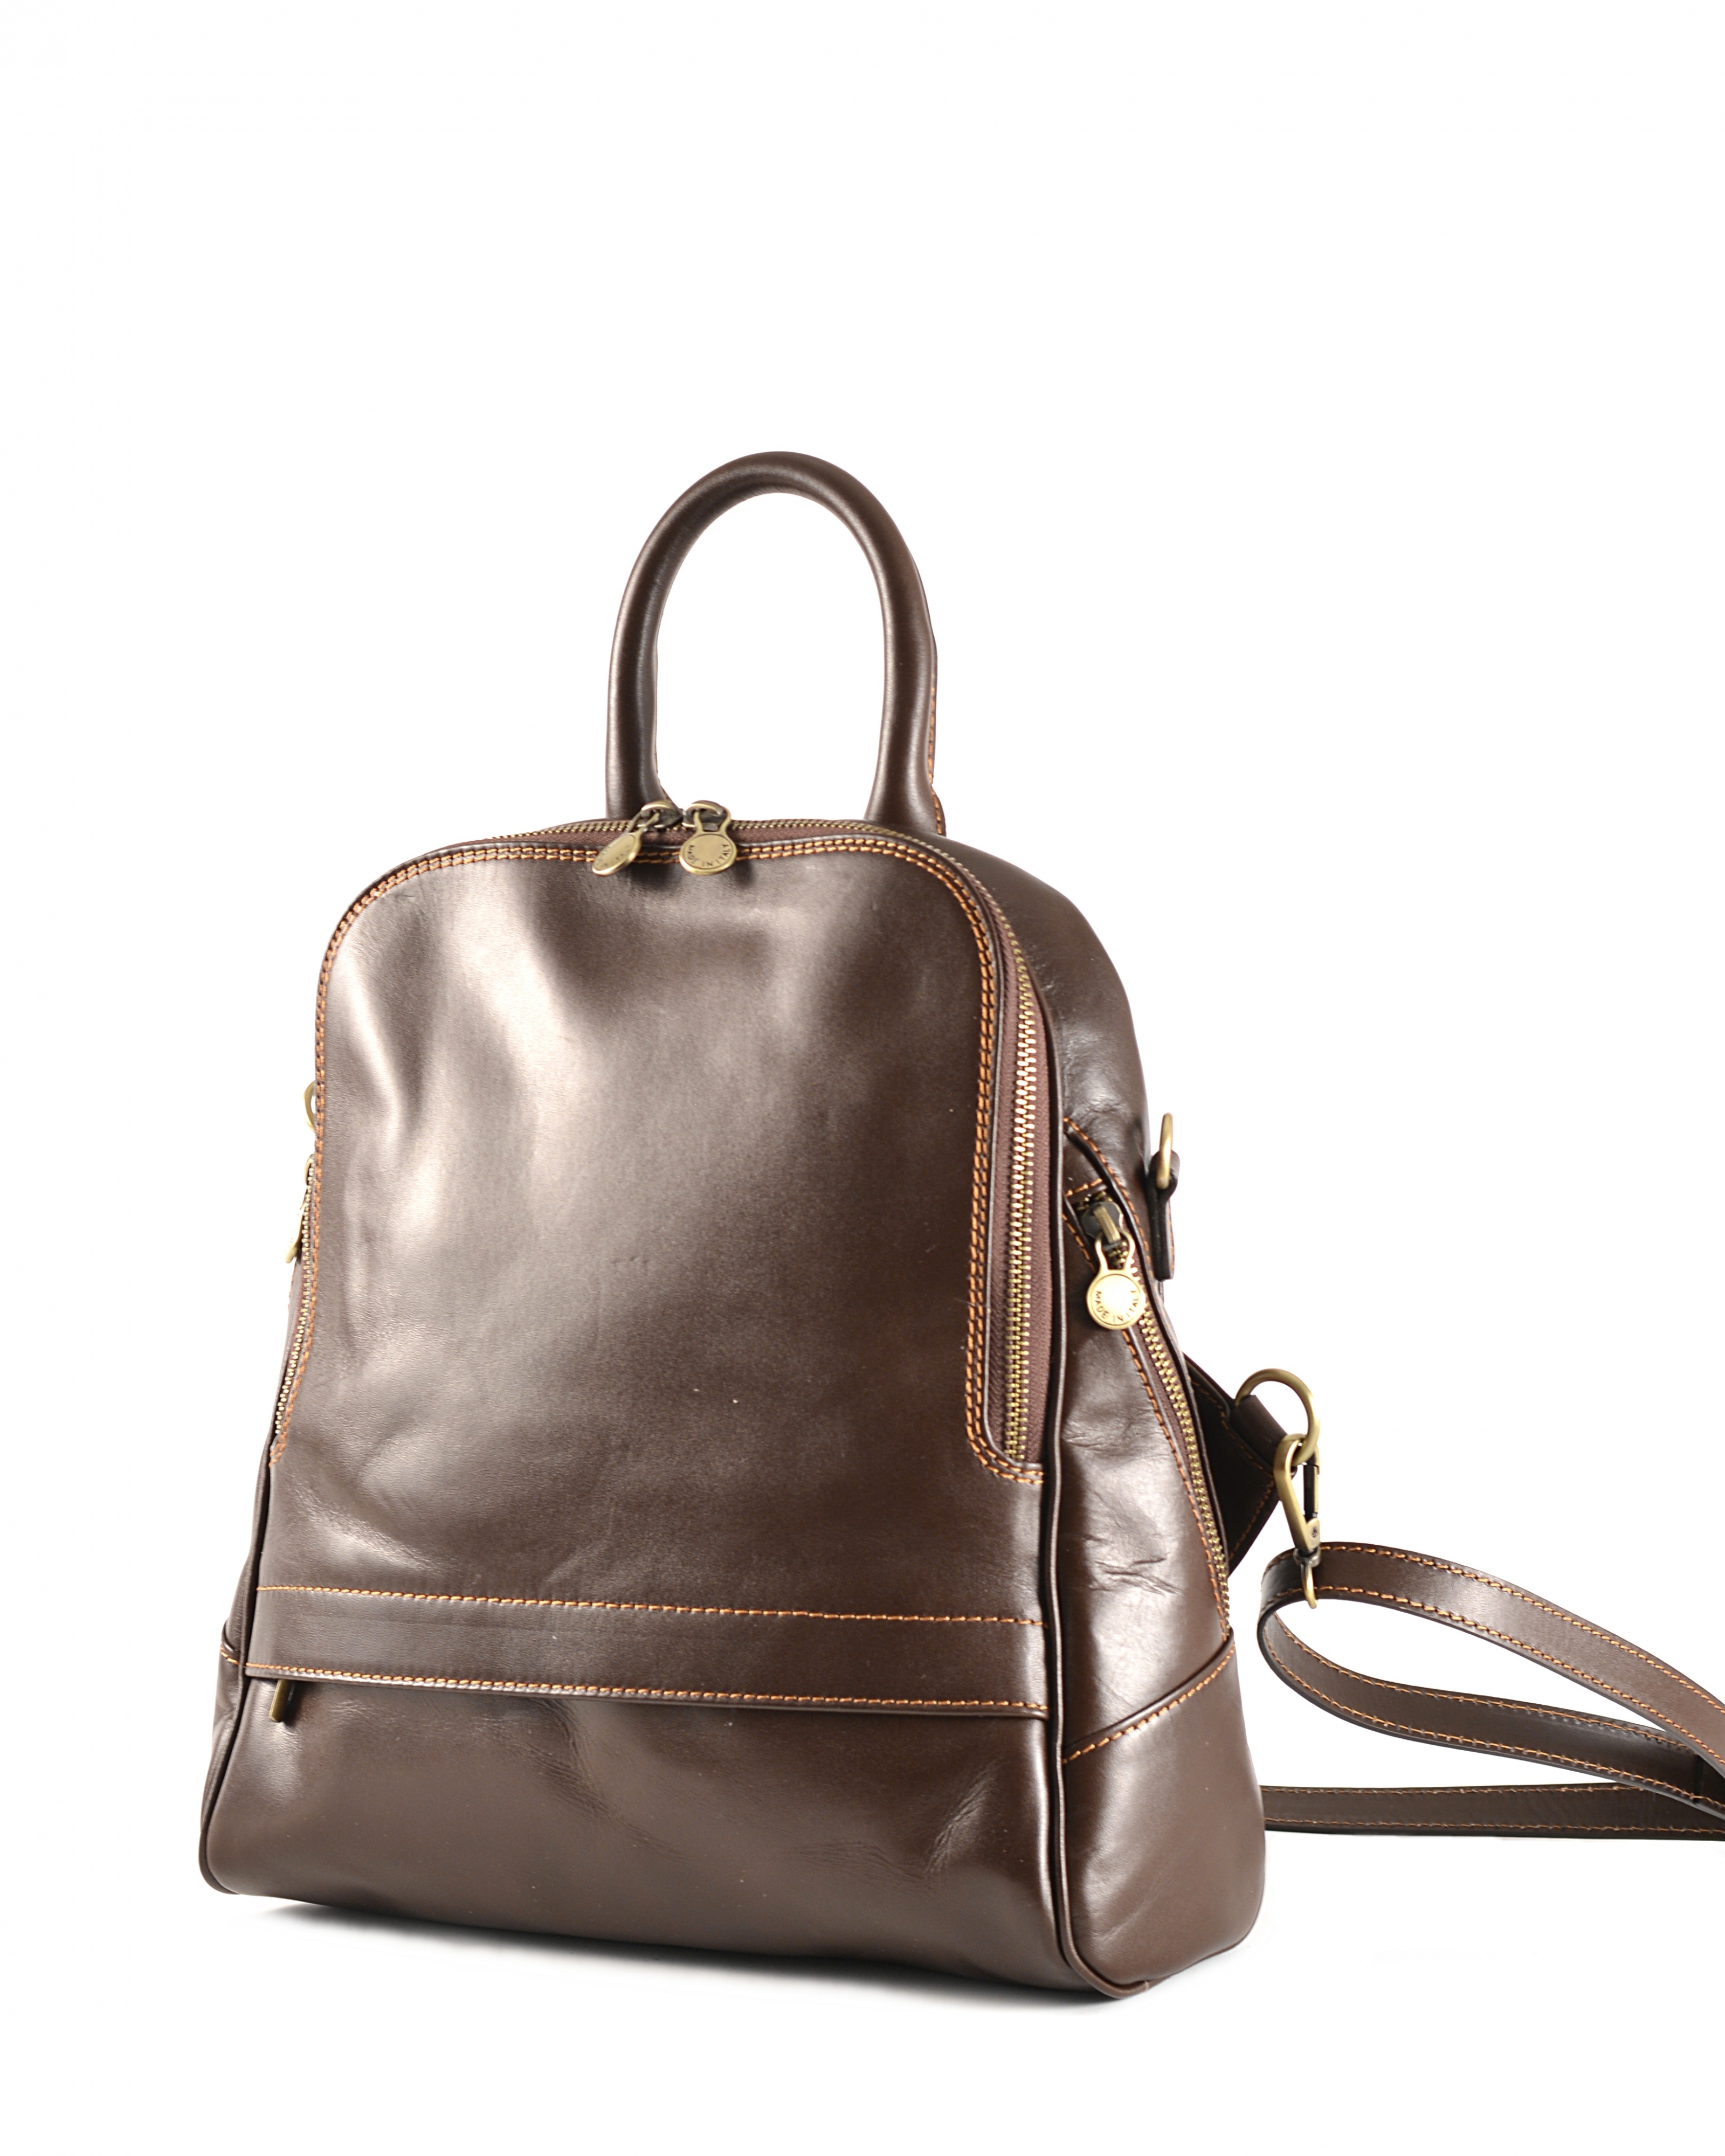 Levně Klasický dámský kabelko-batoh kožený tmavě hnědý, 29 x 11 x 33 (6516-93)